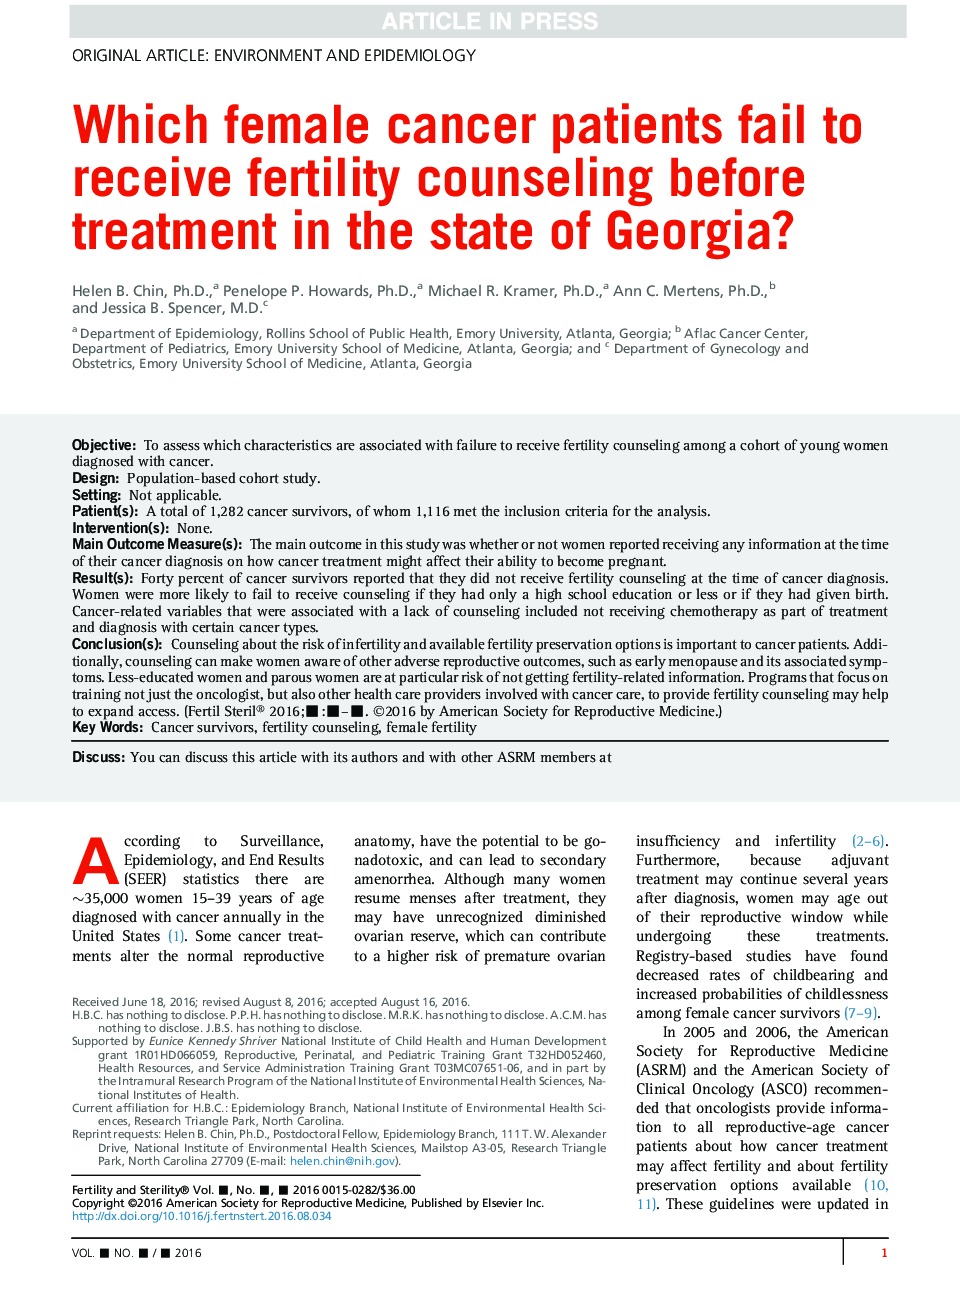 کدام بیمار مبتلا به سرطان قبل از درمان در ایالت جورجیا مشاوره باروری را دریافت نکرده است؟ 